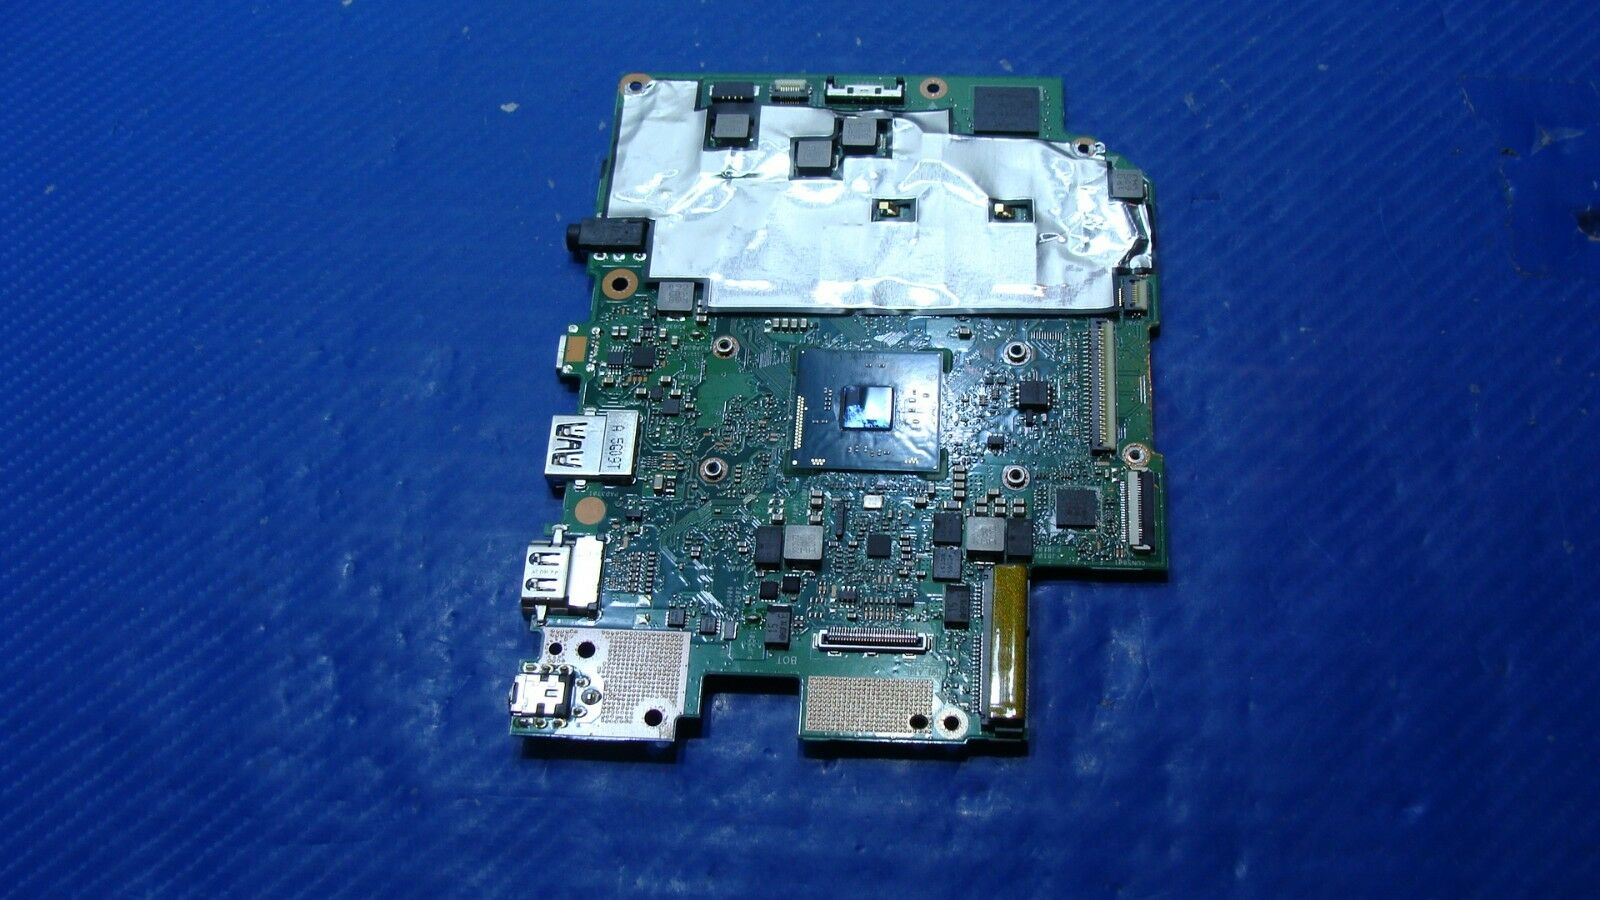 Asus VivoBook E403SA-US21 Intel Pentium N3700 1.6GHz Motherboard 60NL0060-MB2800 ASUS